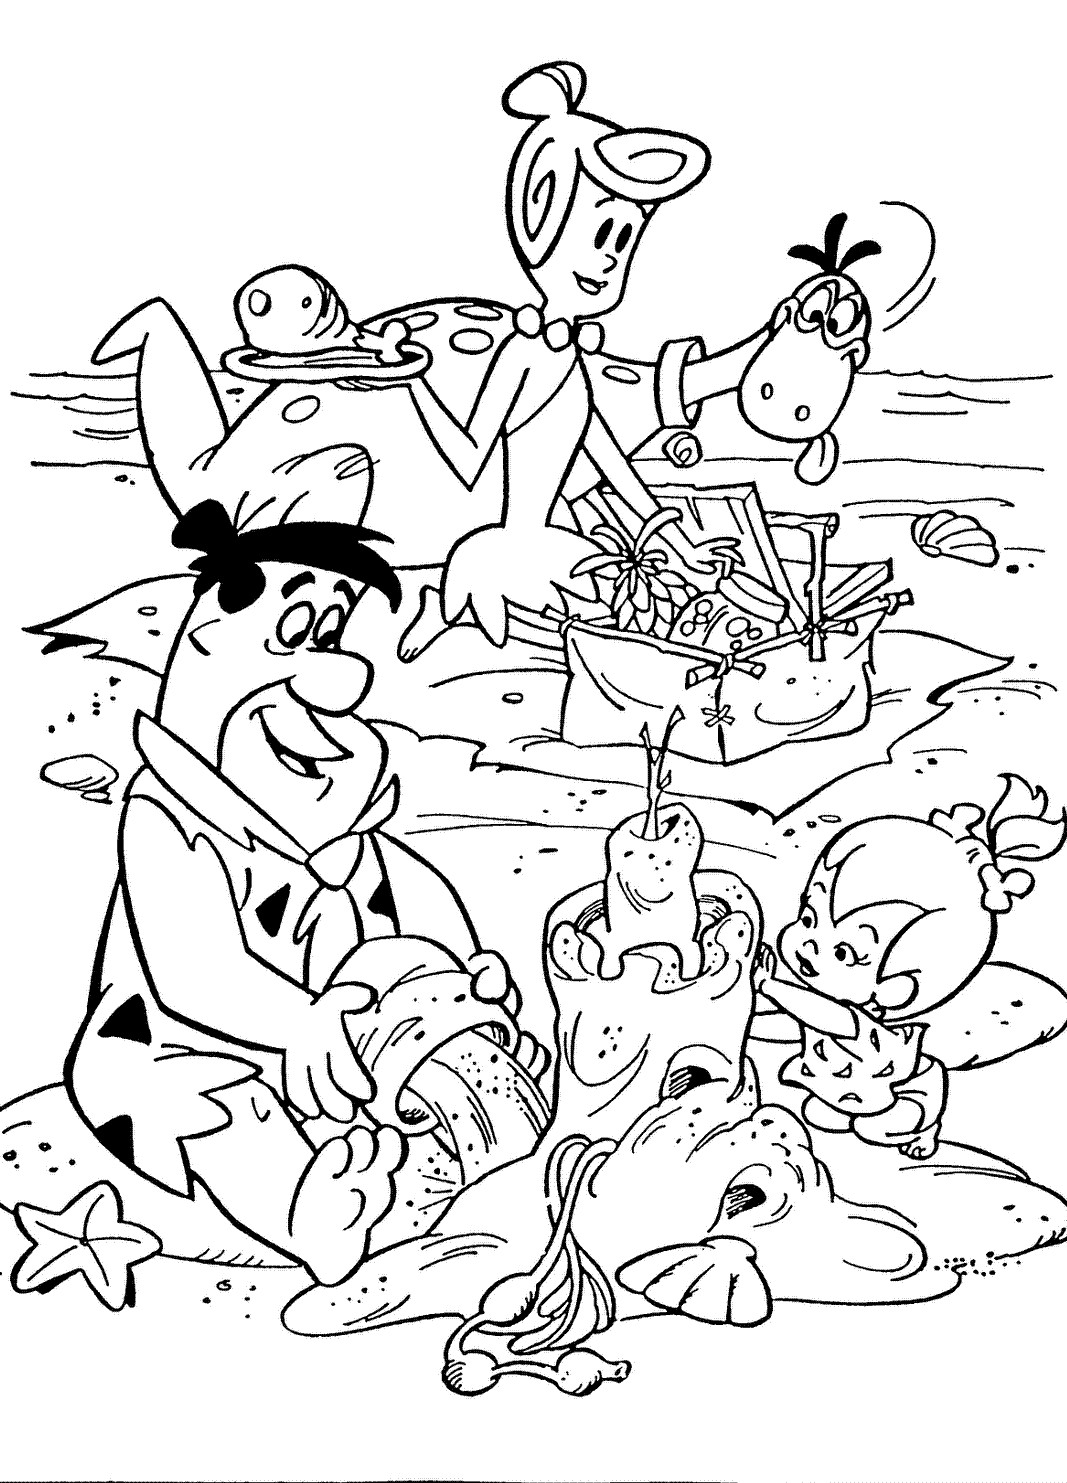 Best ideas about Flintstones Coloring Pages
. Save or Pin Flintstones Coloring Pages Now.